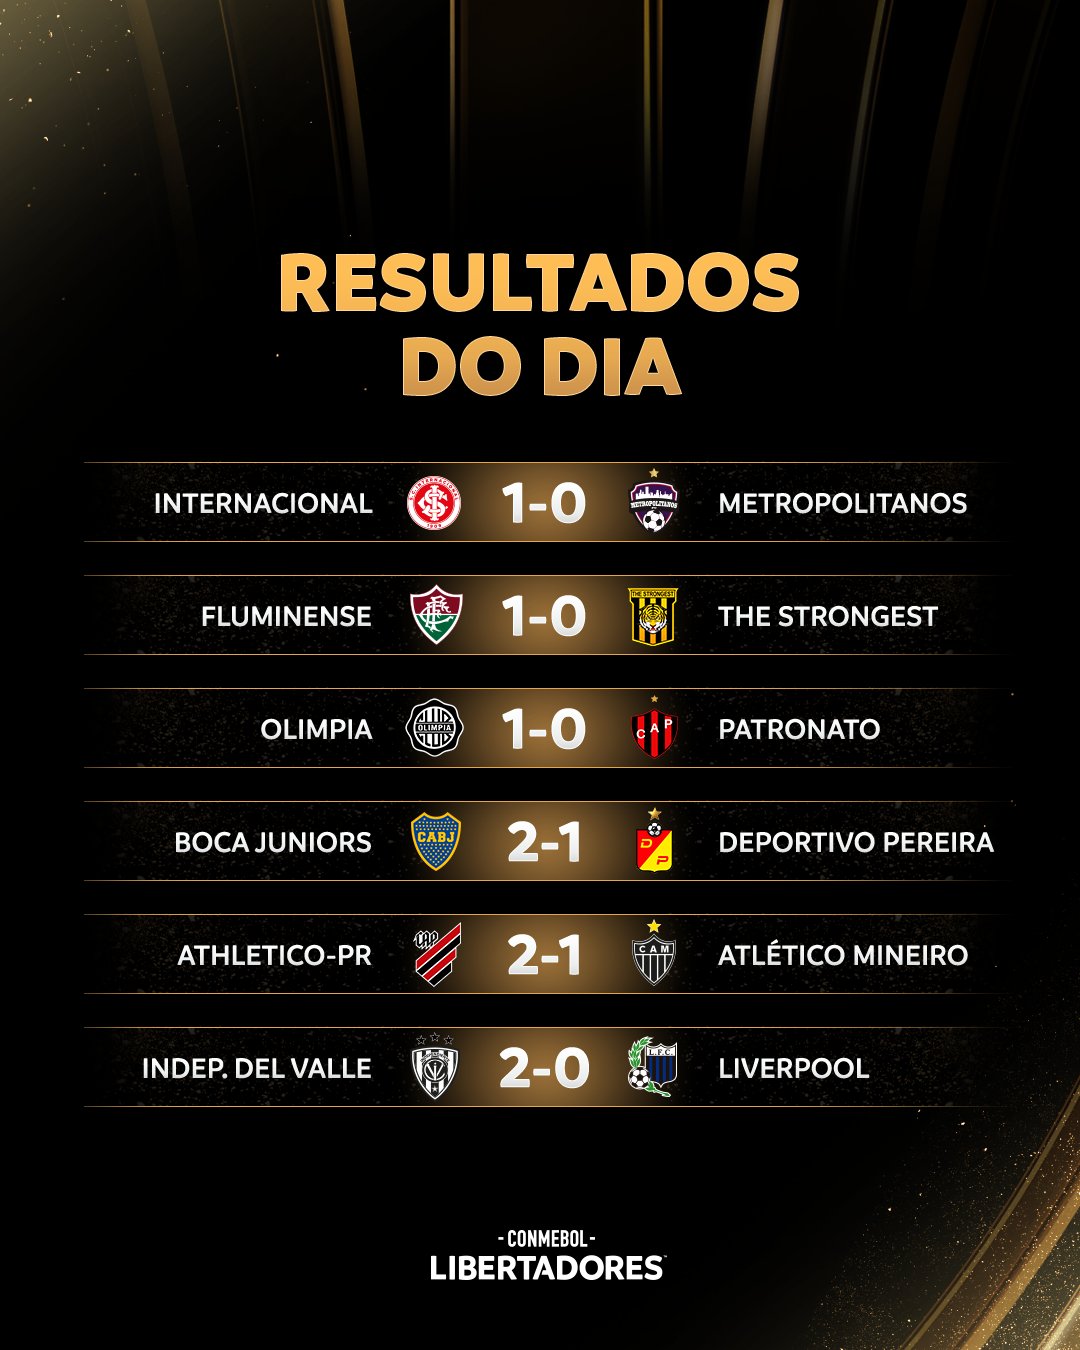 Libertadores 2023: fase de grupos começa nesta terça; veja os